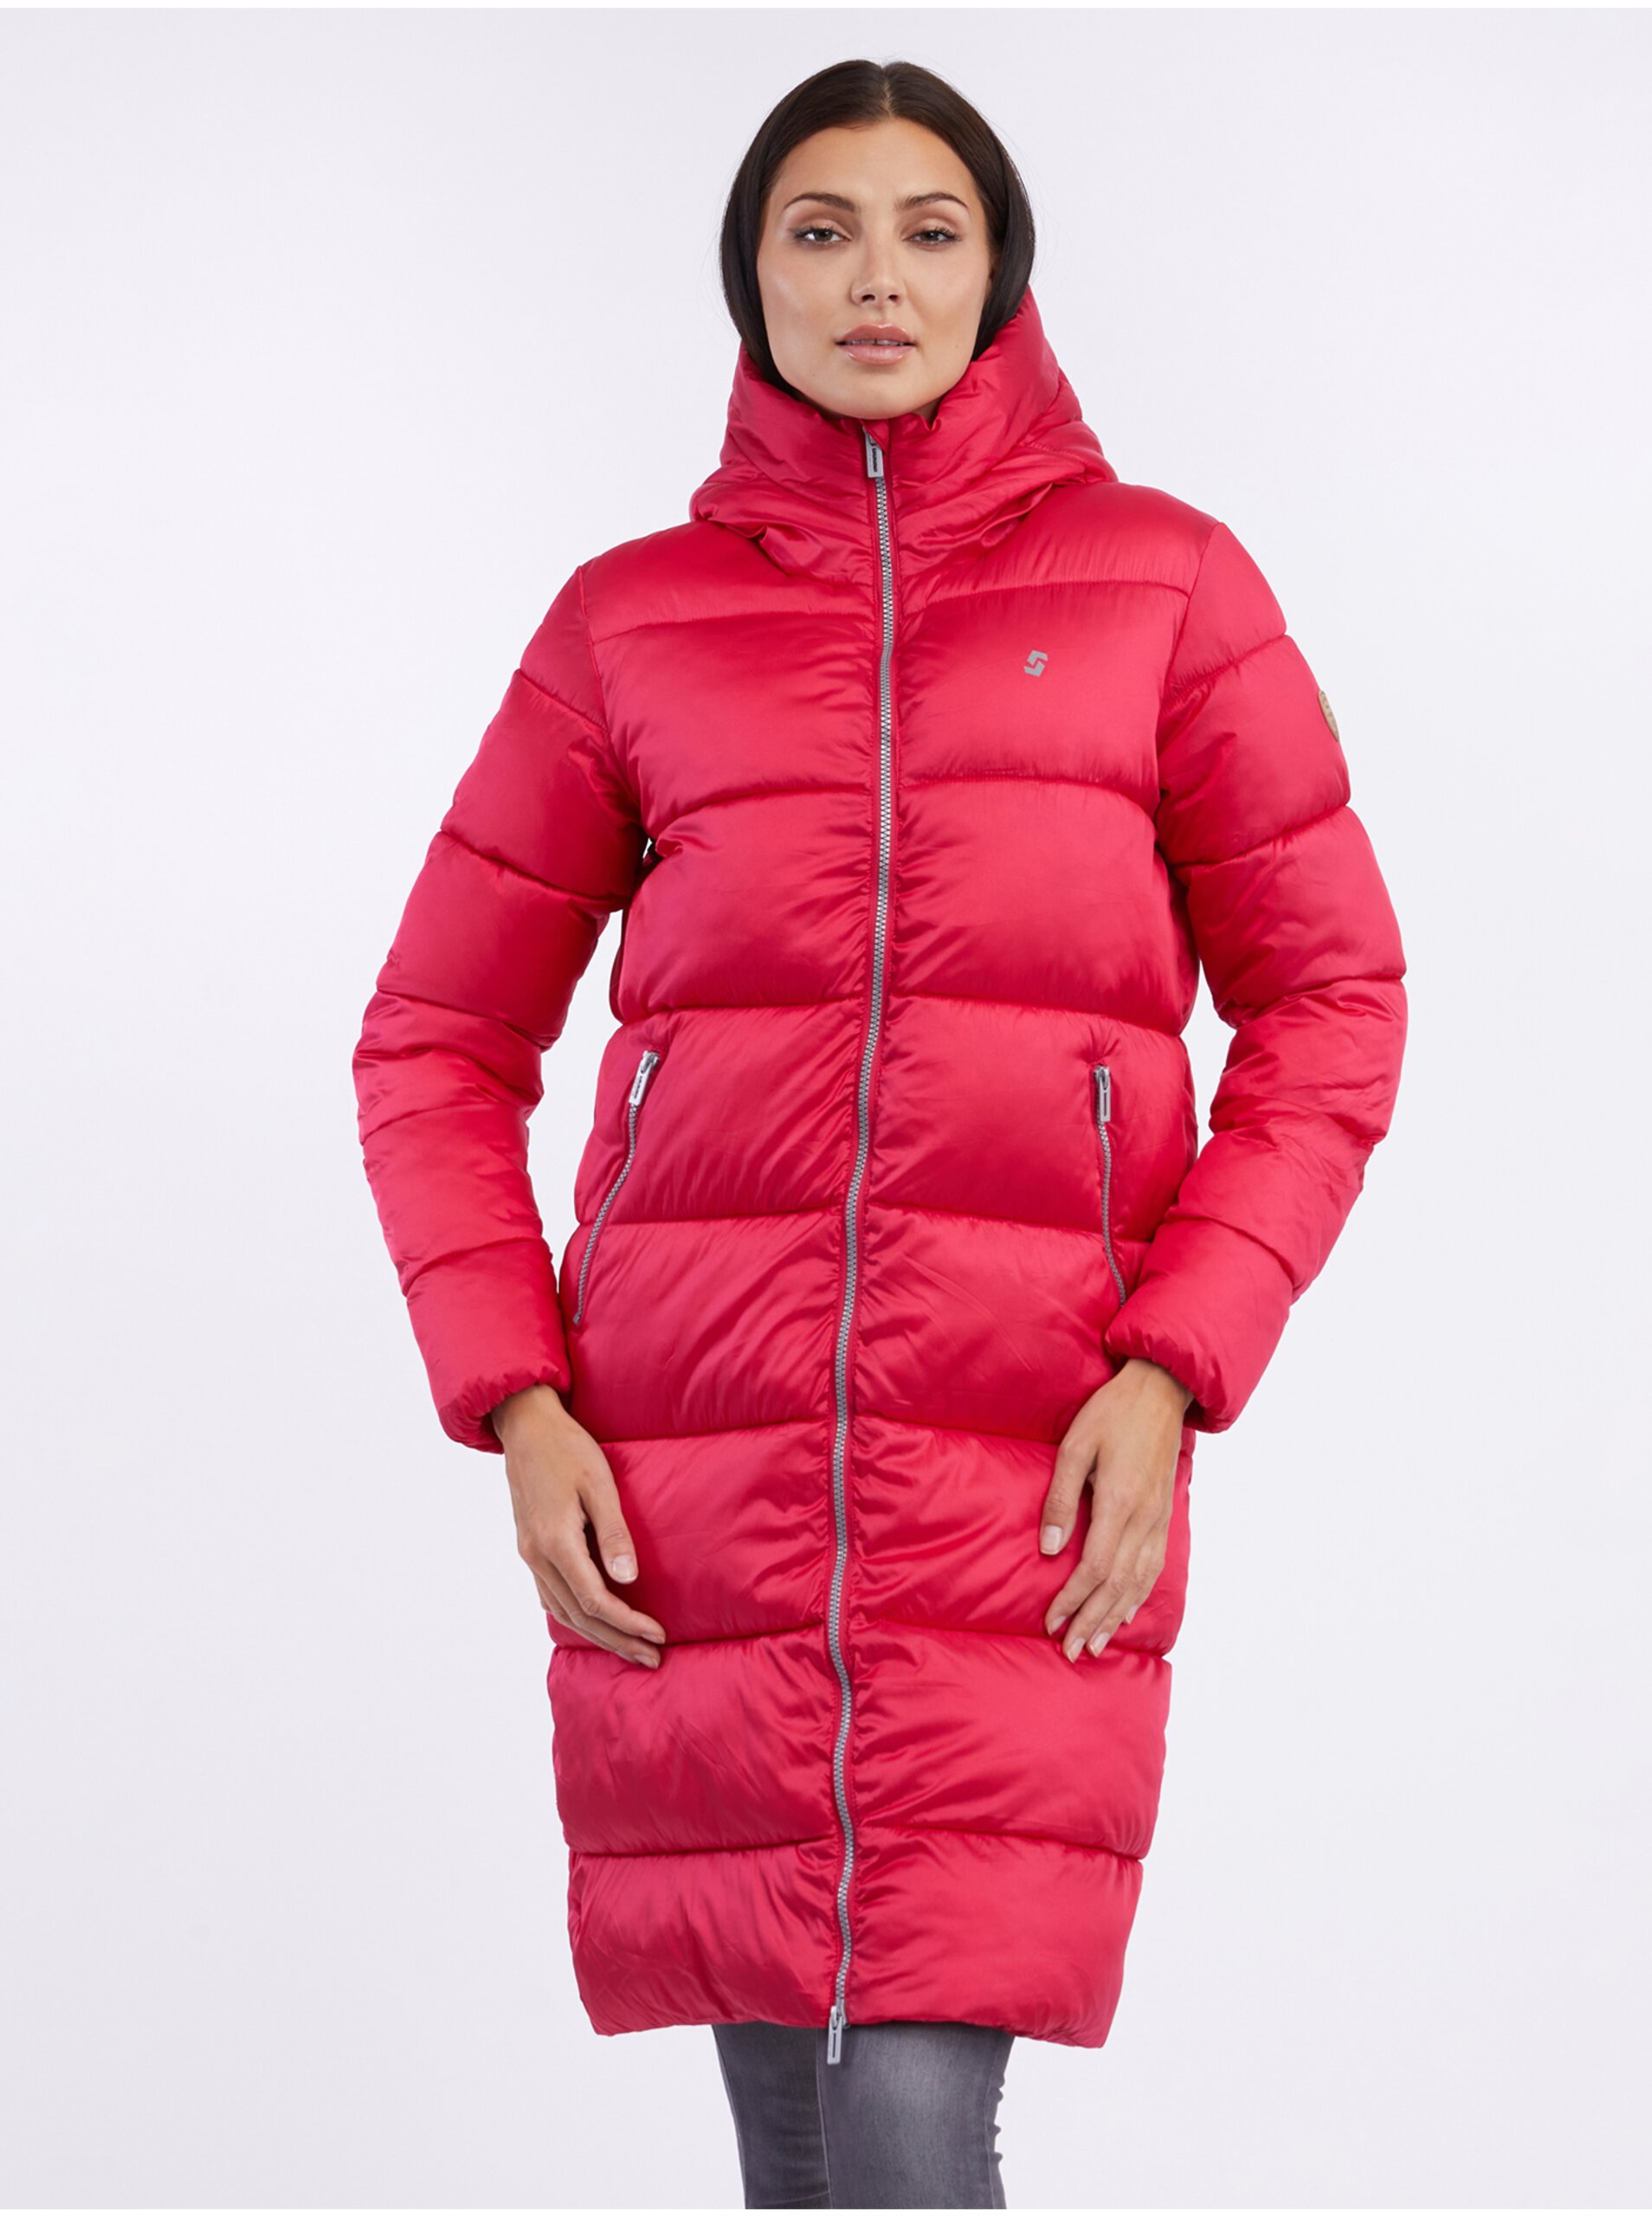 E-shop Tmavě růžový dámský zimní prošívaný kabát SAM 73 Hedvika